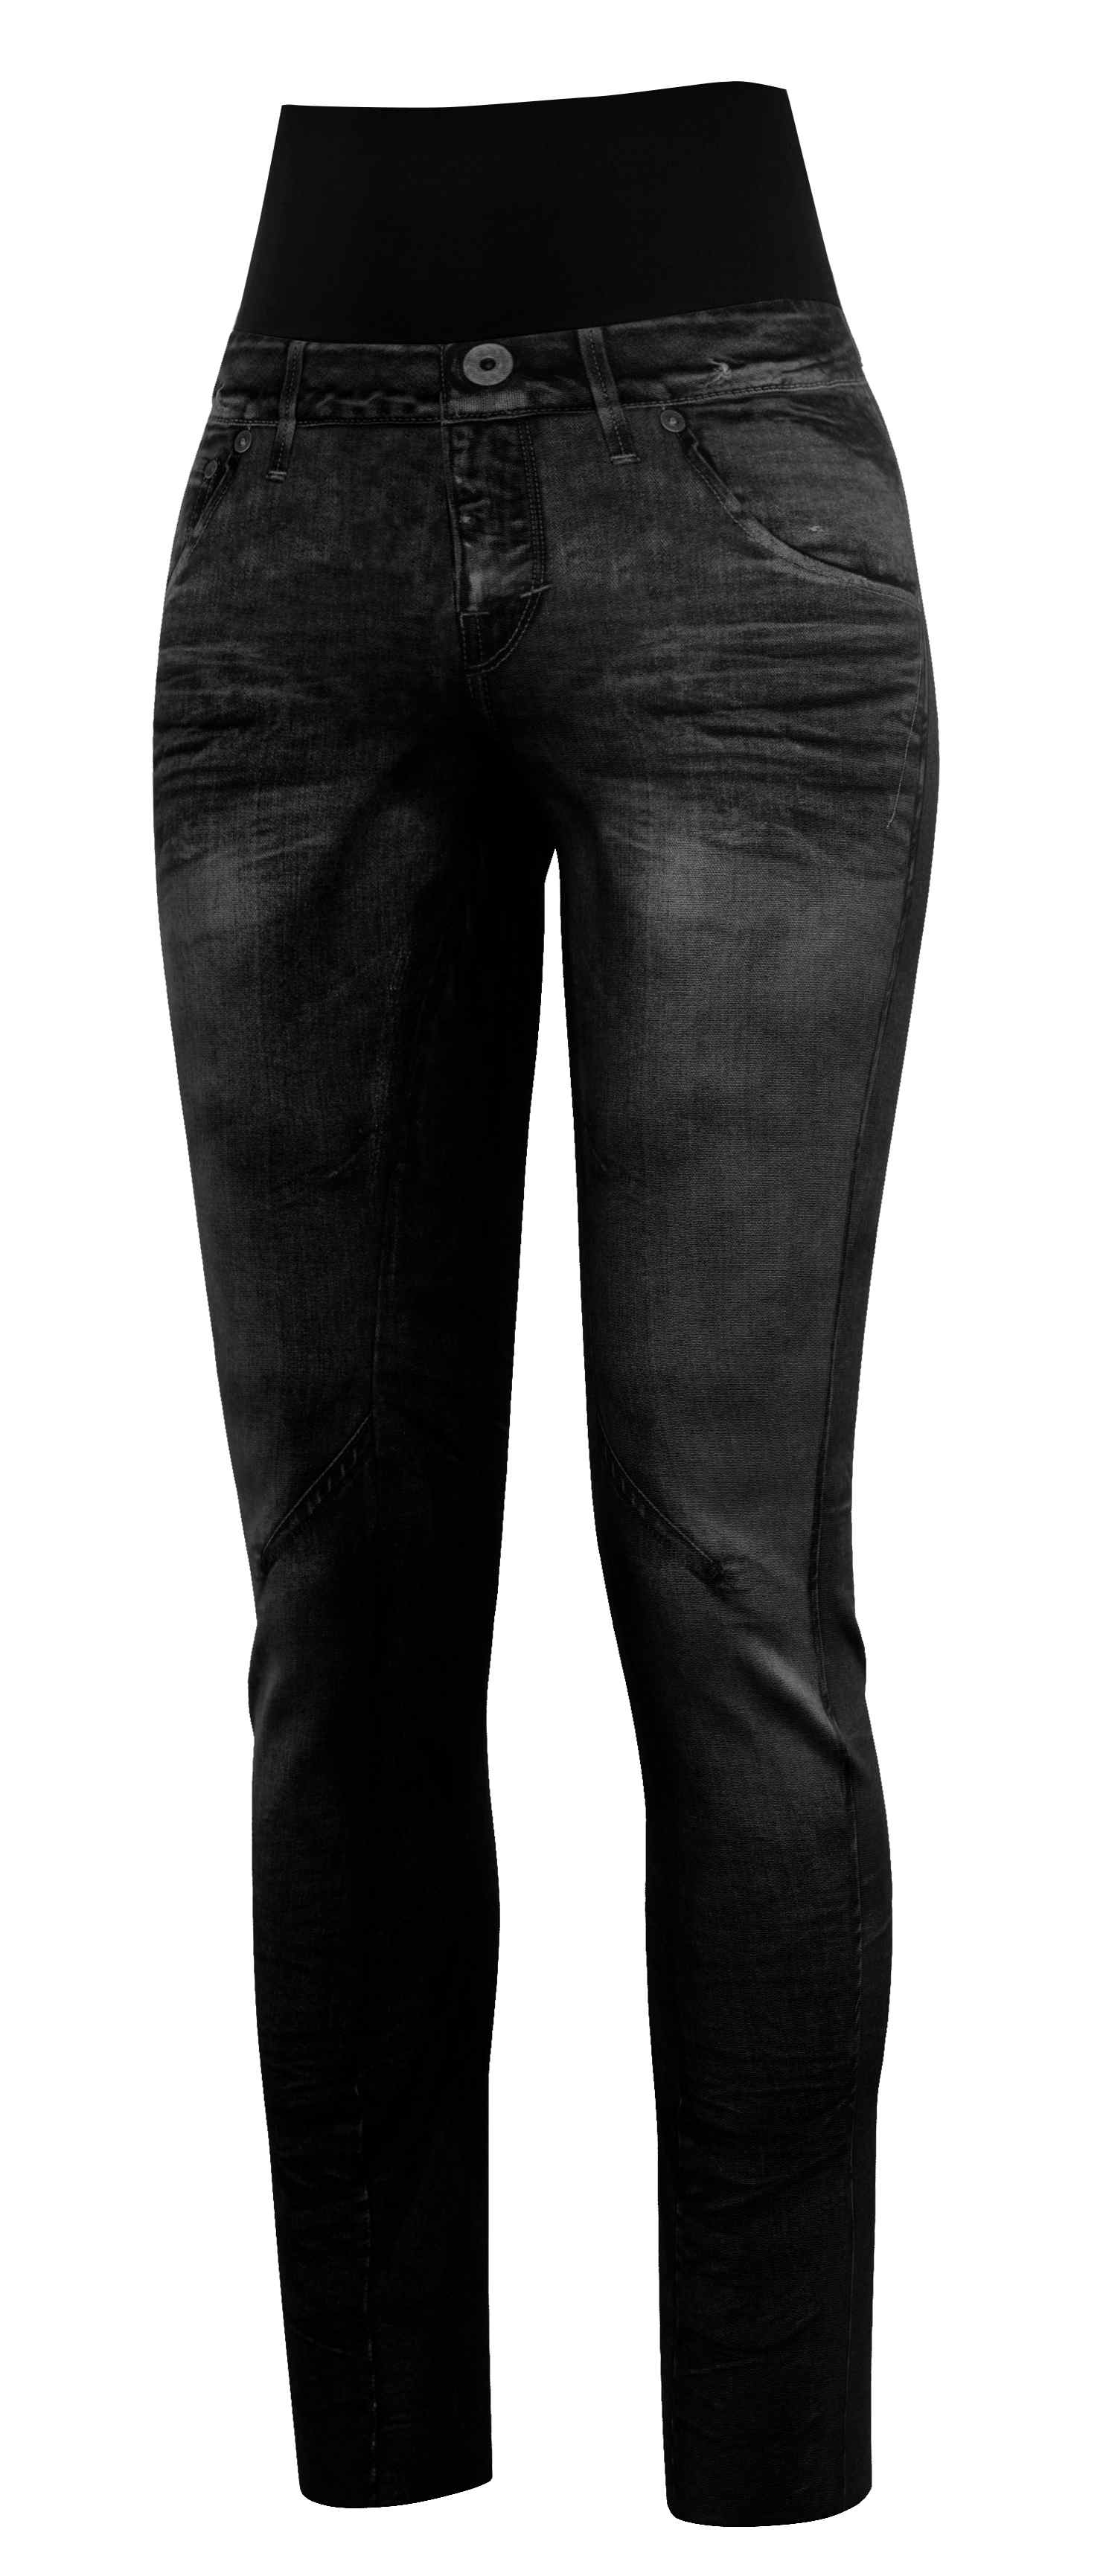 CRAZY IDEA Crazy kalhoty Sound print jeans black Velikost: S